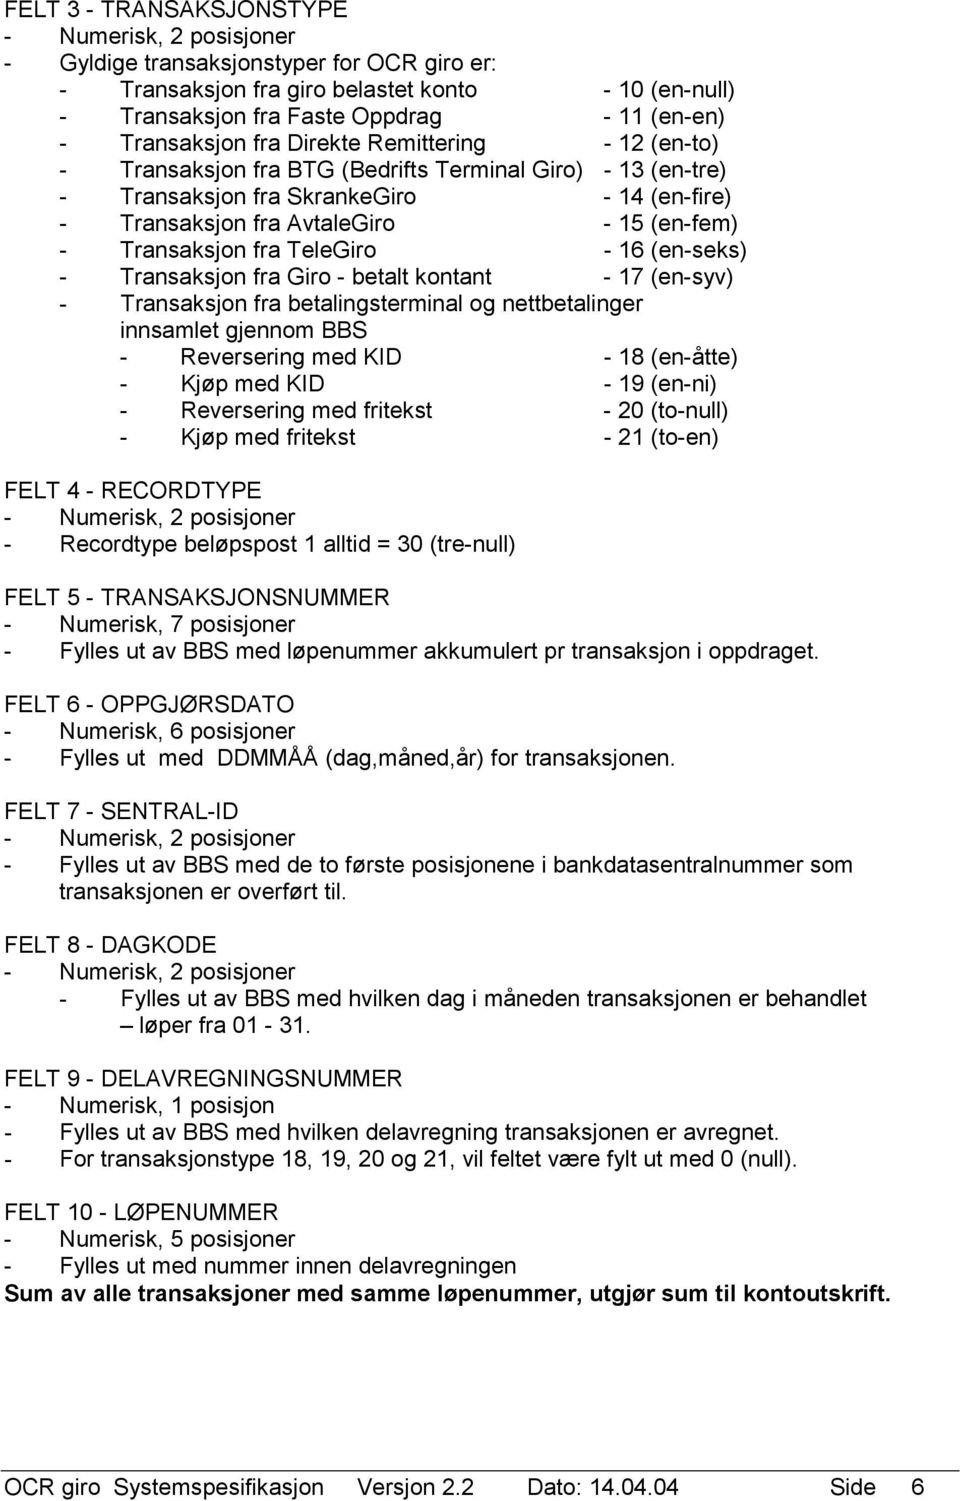 TeleGiro - 16 (en-seks) - Transaksjon fra Giro - betalt kontant - 17 (en-syv) - Transaksjon fra betalingsterminal og nettbetalinger innsamlet gjennom BBS - Reversering med KID - 18 (en-åtte) - Kjøp